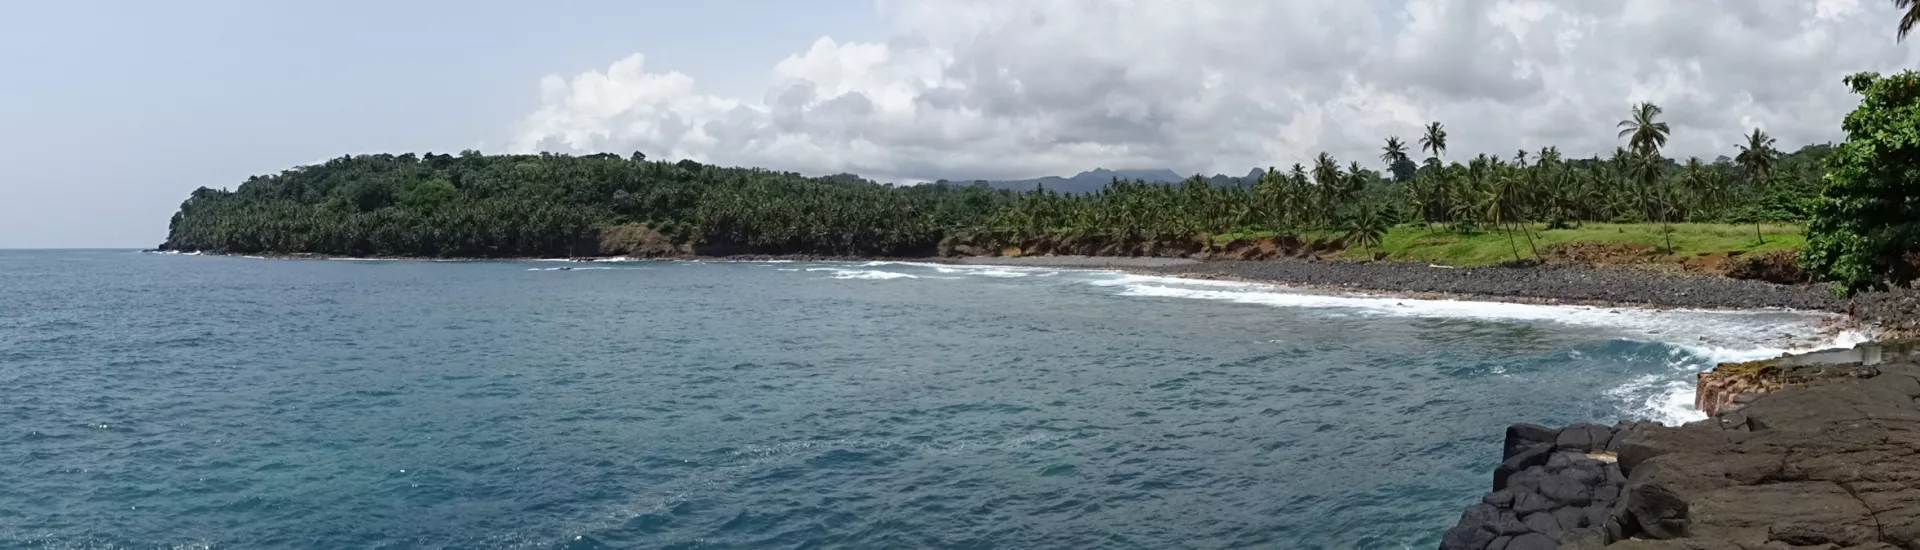 Beaches of Sao Tome and Principe